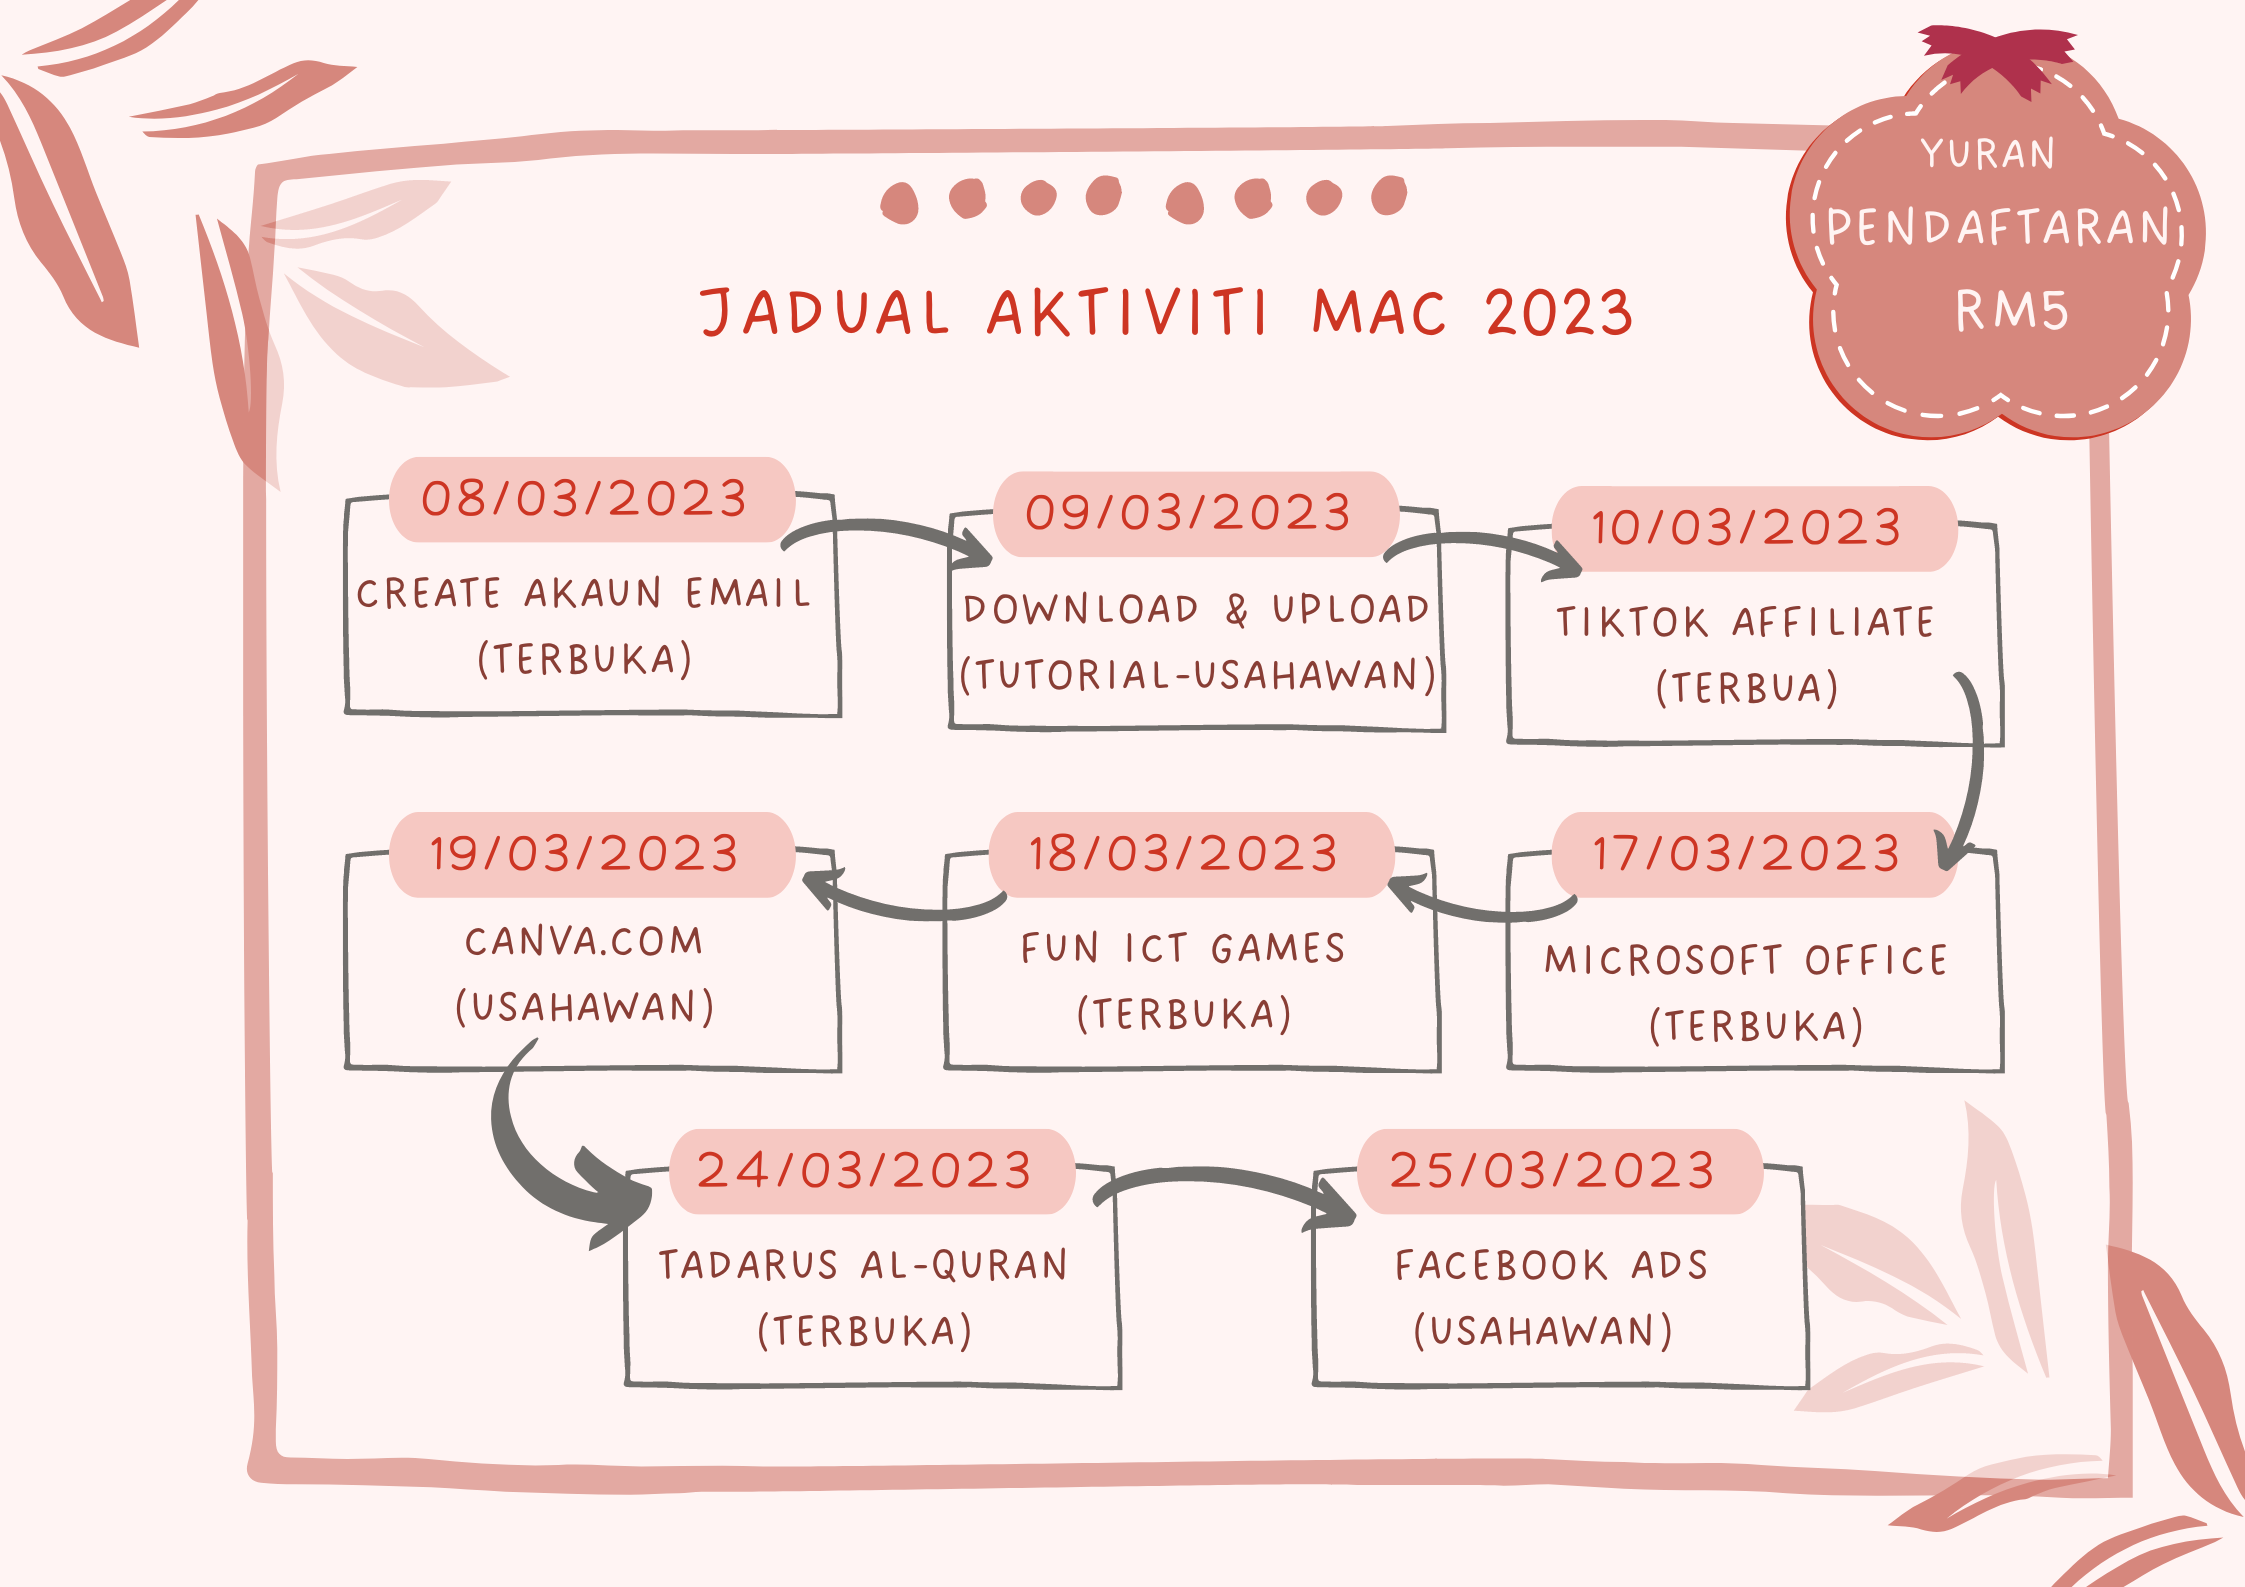 JADUAL AKTIVITI MAC 2023